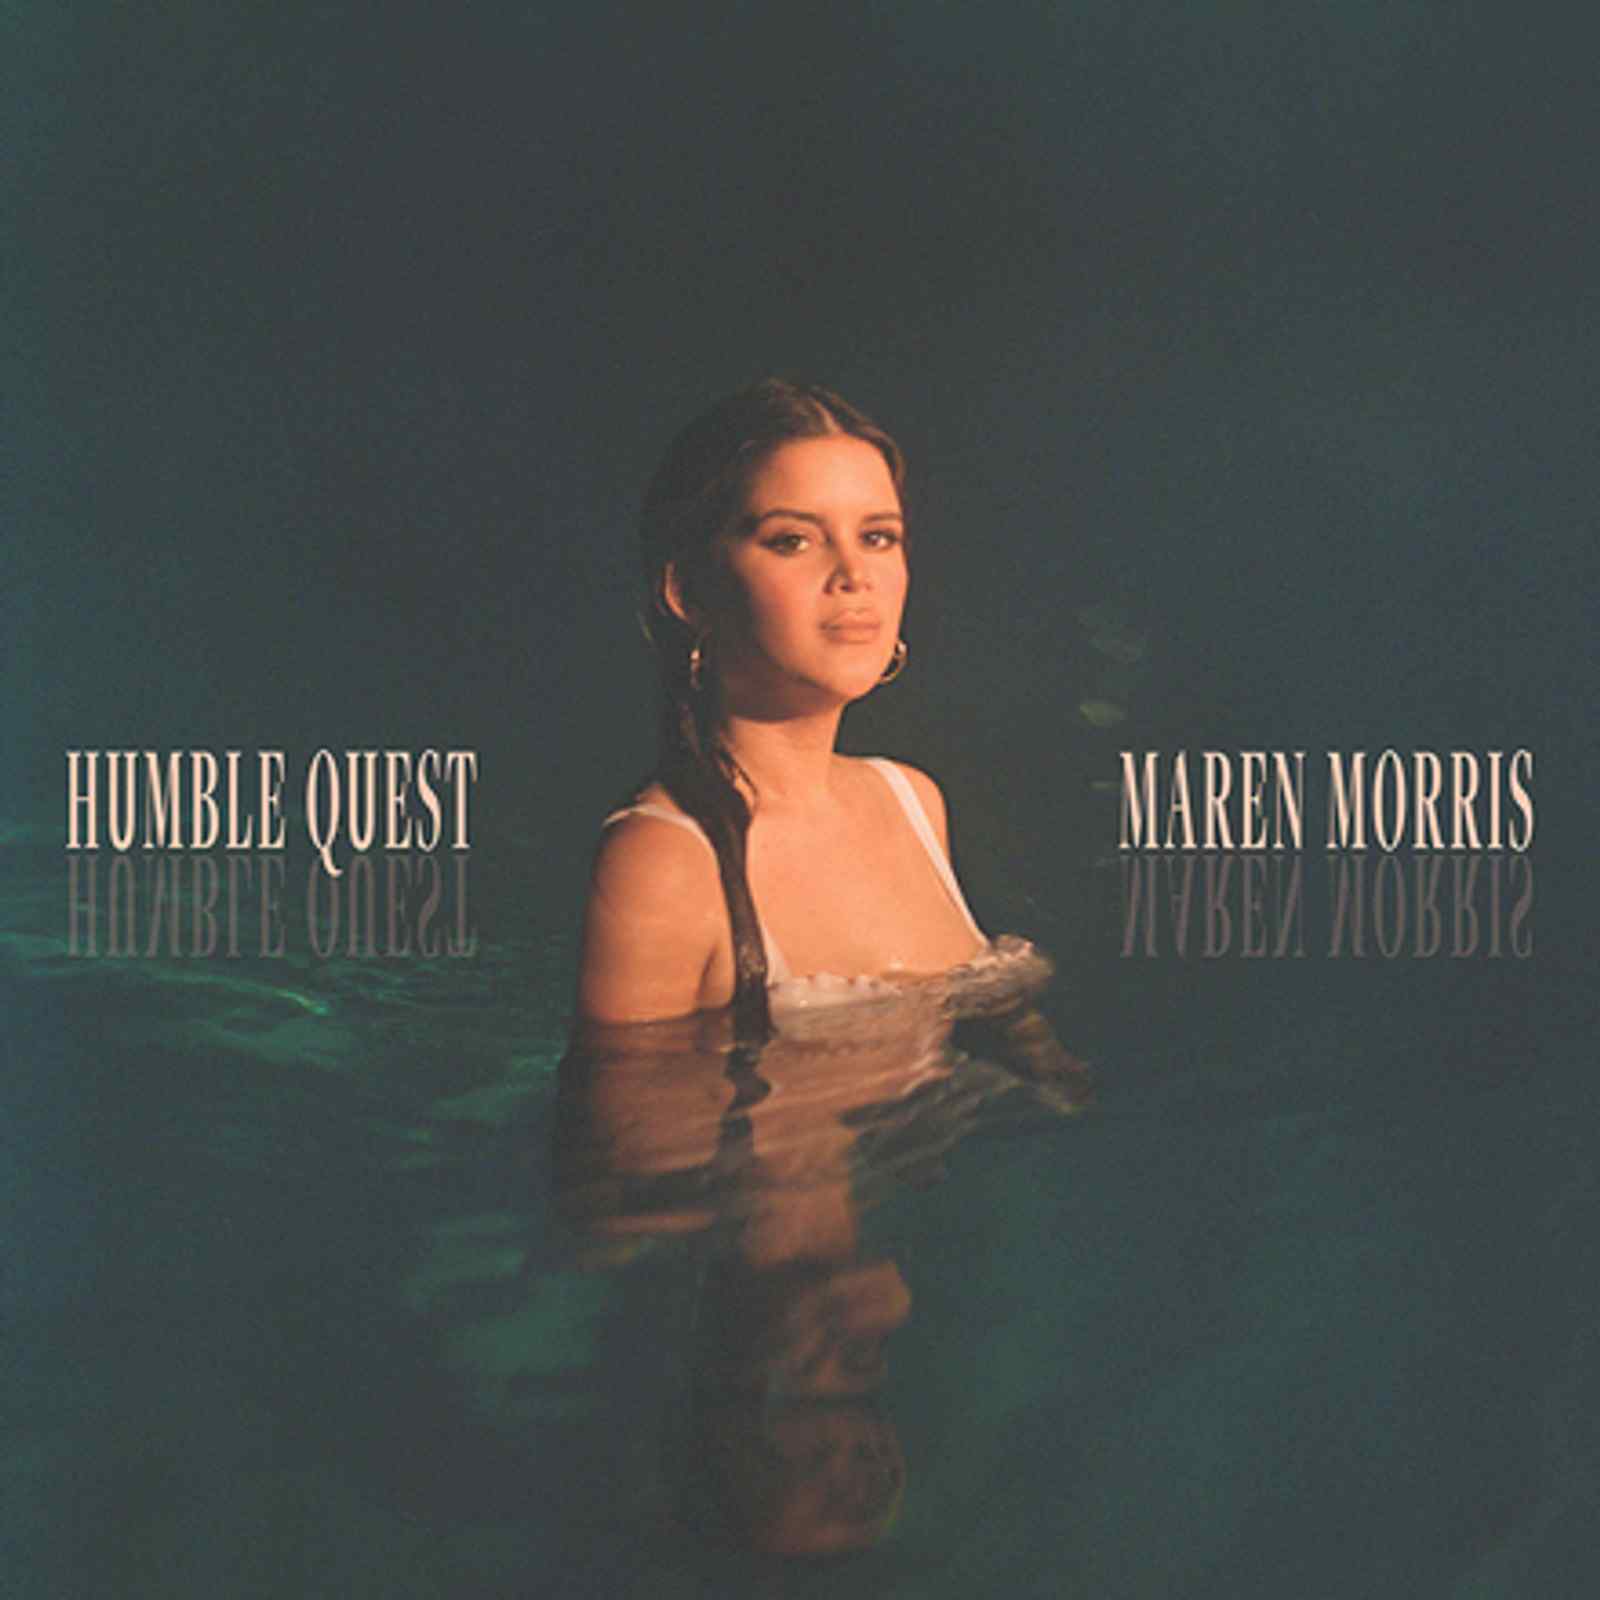 Humble Quest by Maren Morris